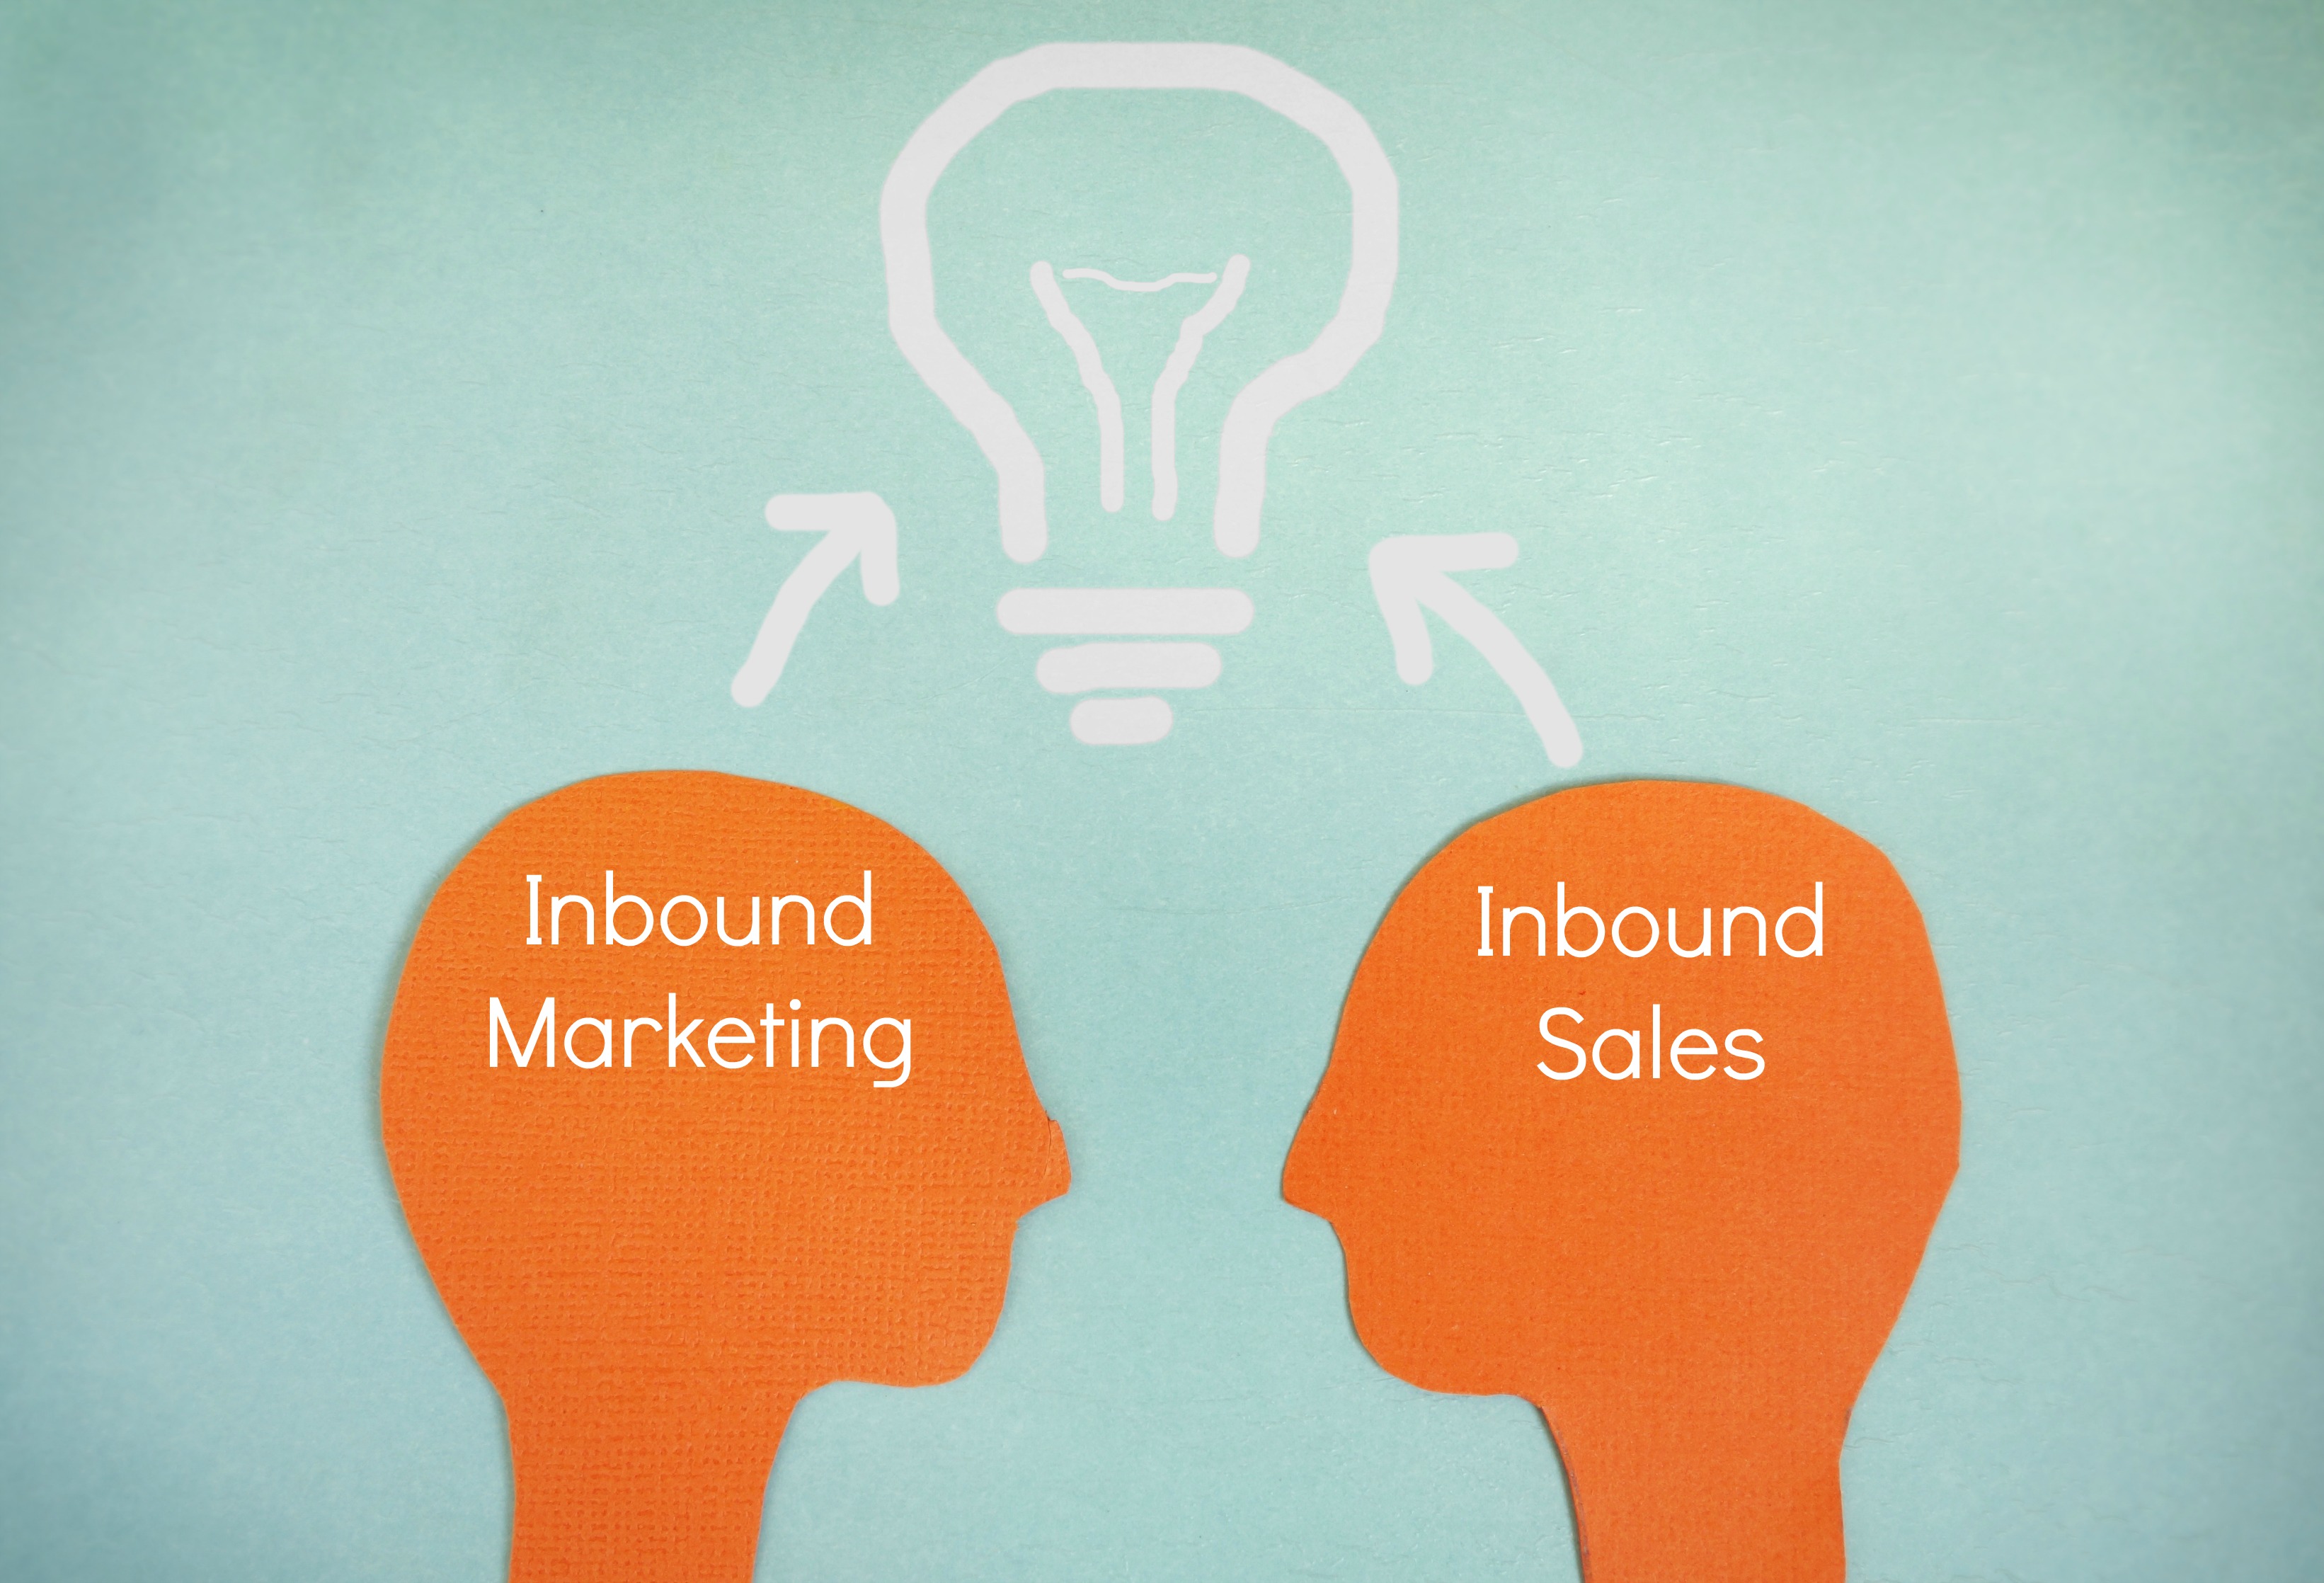 Inbound_Marketing_and_Inbound_Sales.jpg